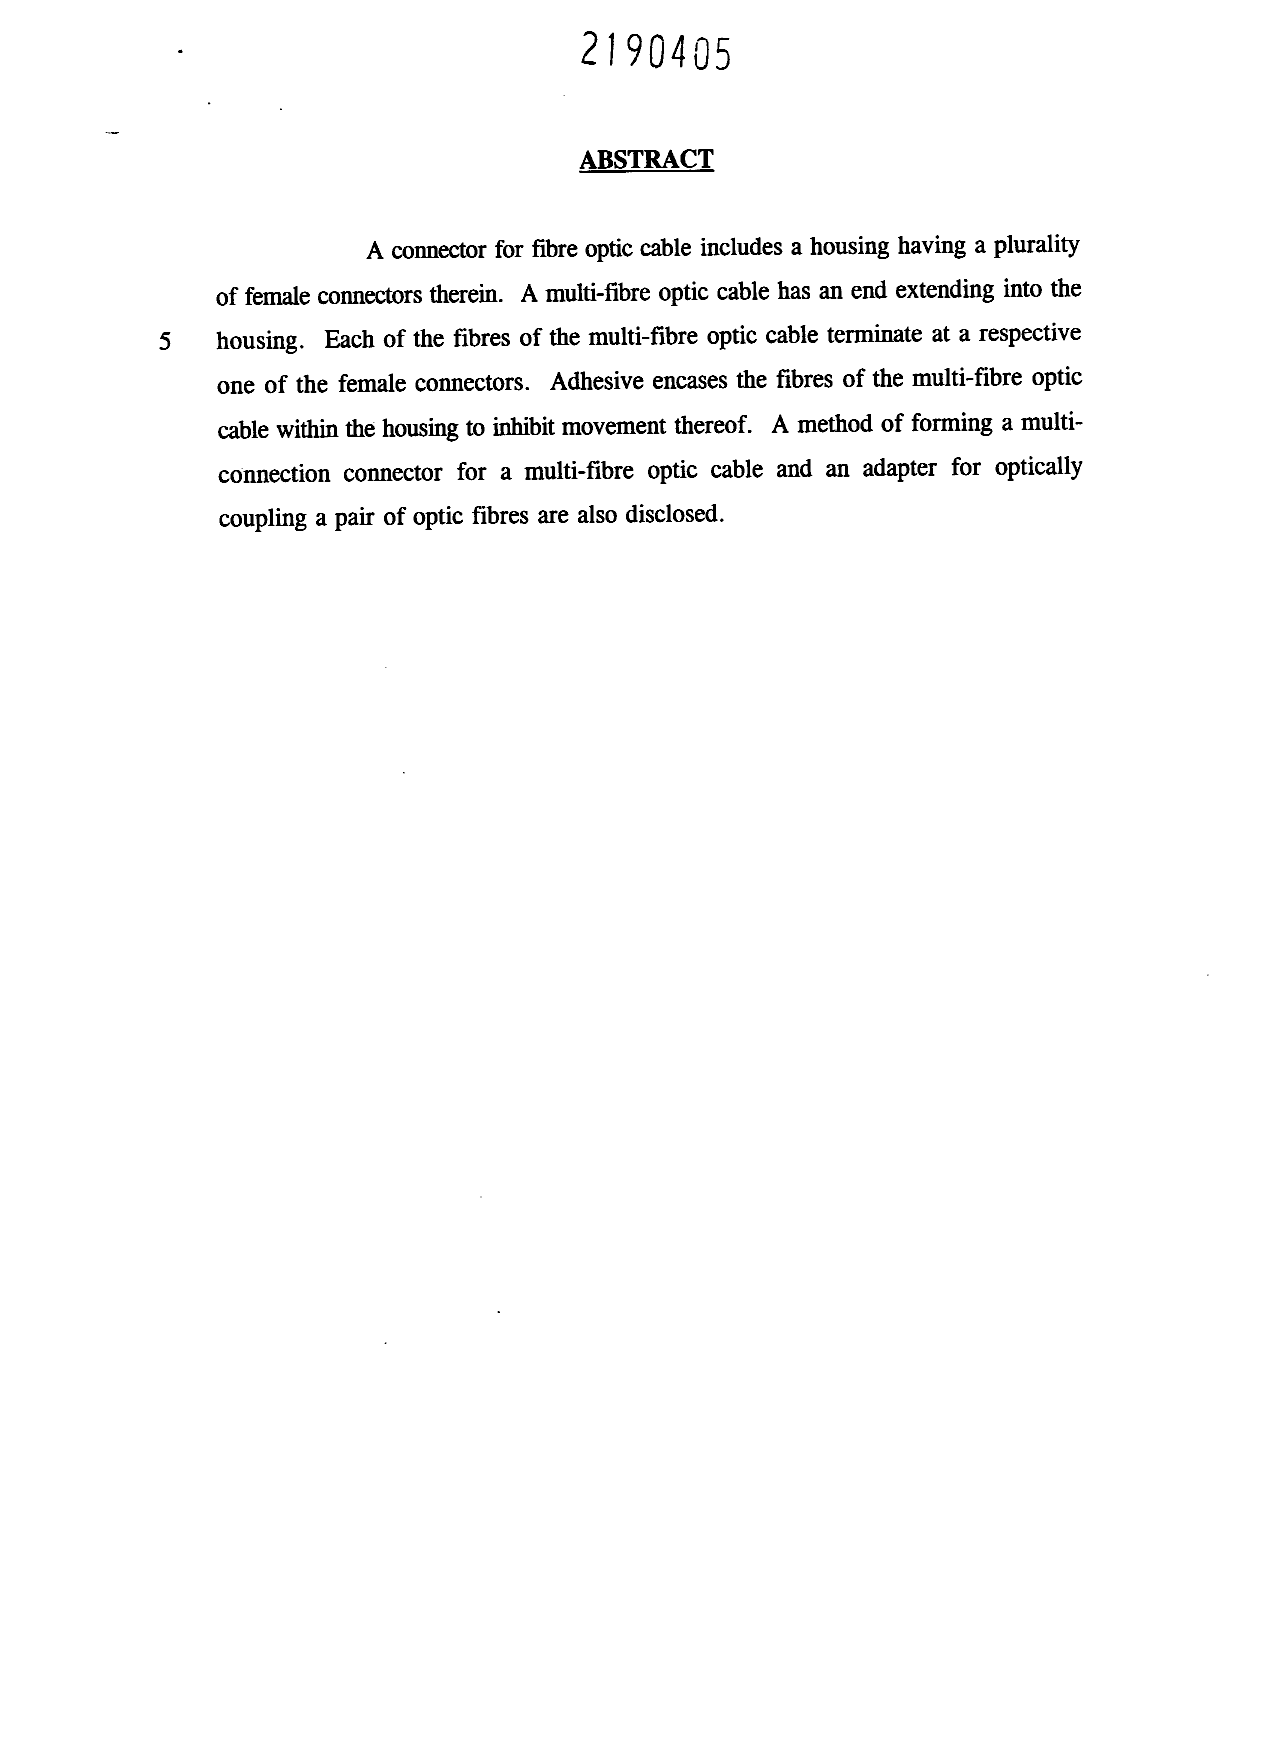 Document de brevet canadien 2190405. Abrégé 19970414. Image 1 de 1